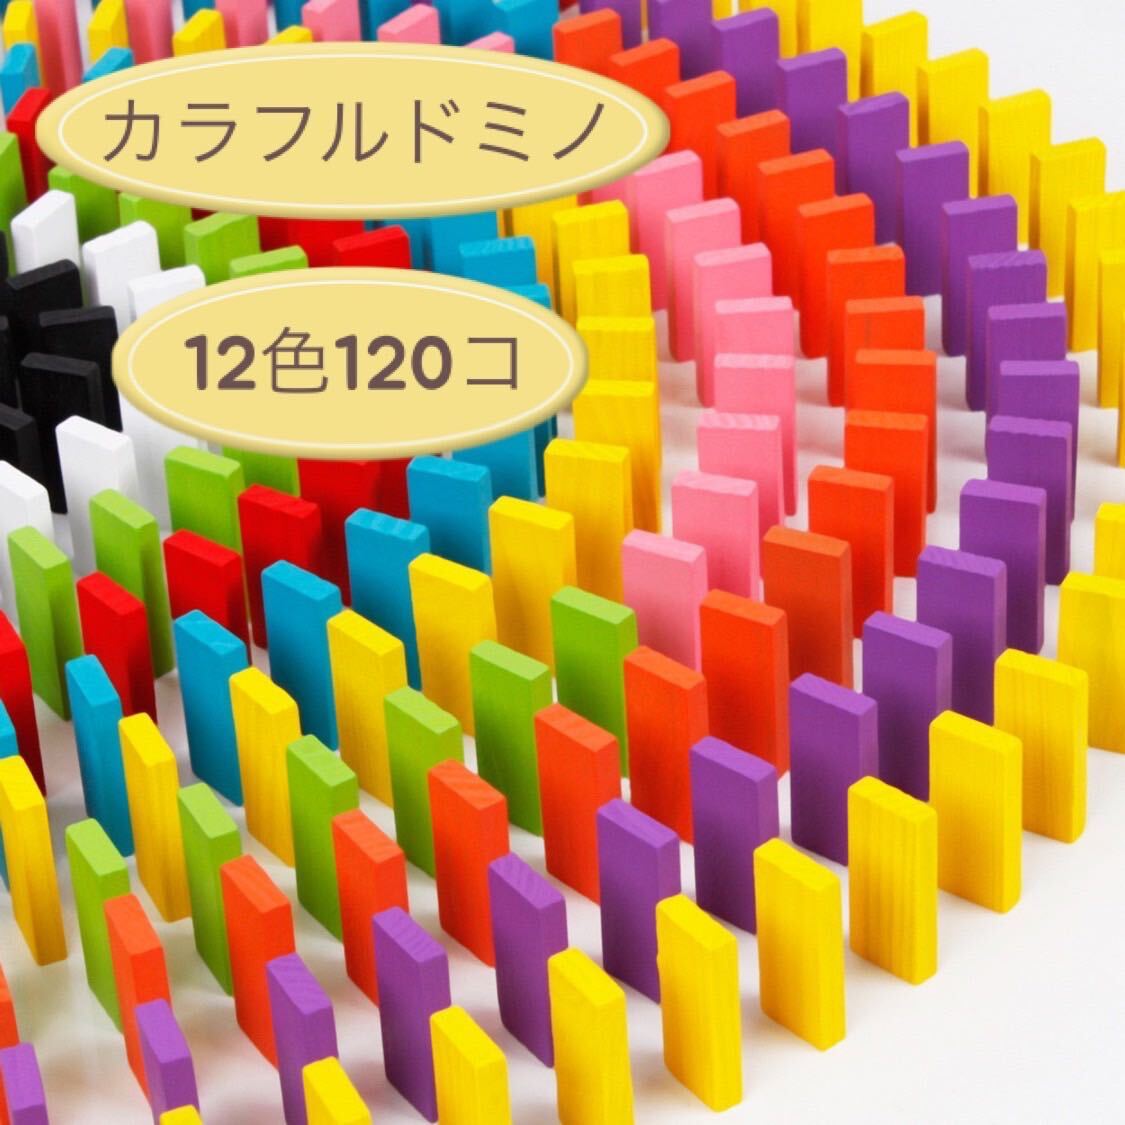 ドミノ 知育玩具 積み木 木製 12色 120個 おもちゃ カラフル 子ども_画像1